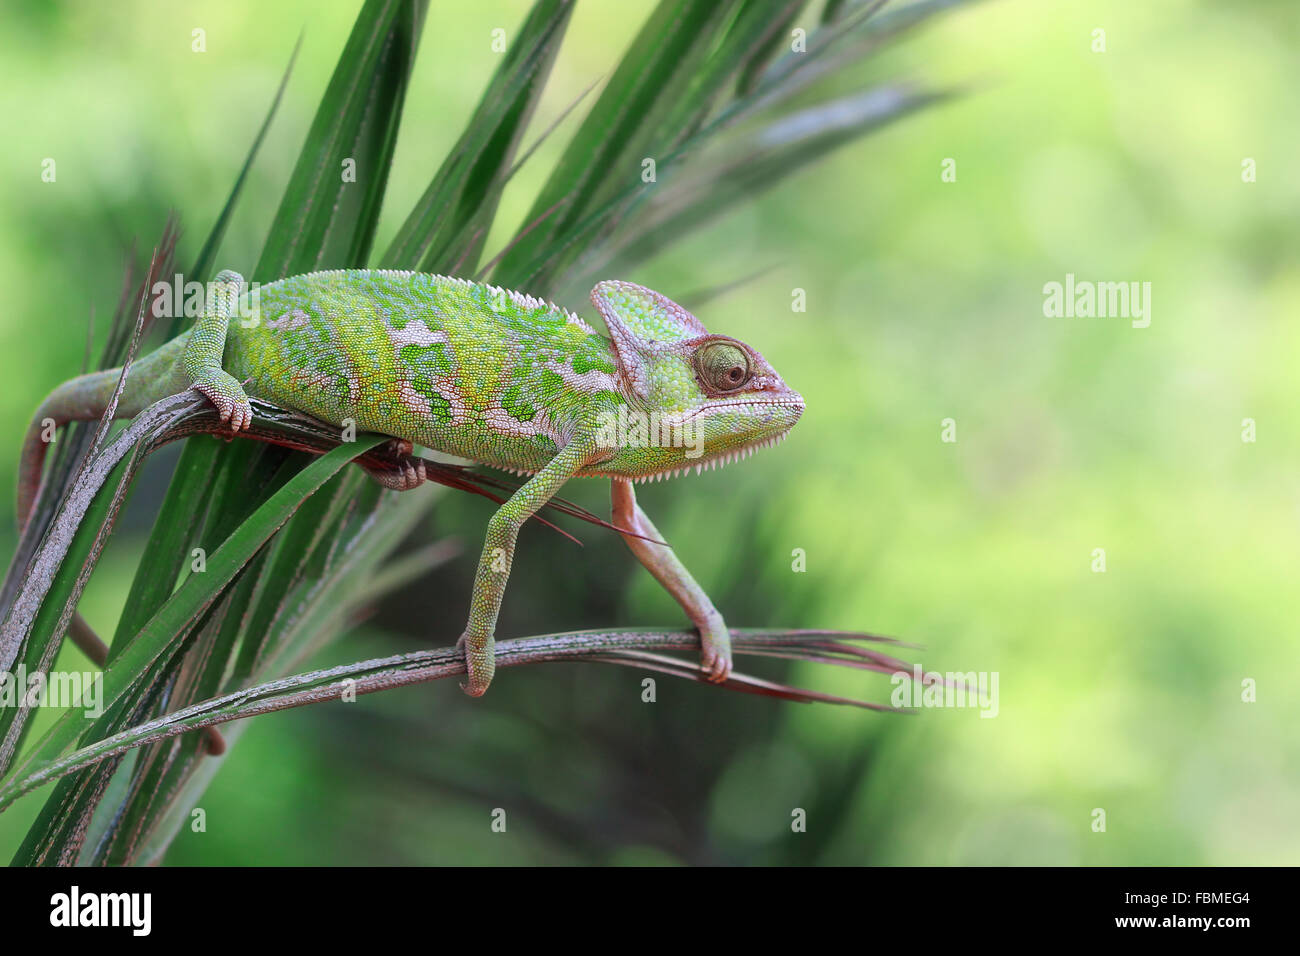 Veiled Chameleon (chamaeleo calyptratus) sitting on a plant Stock Photo